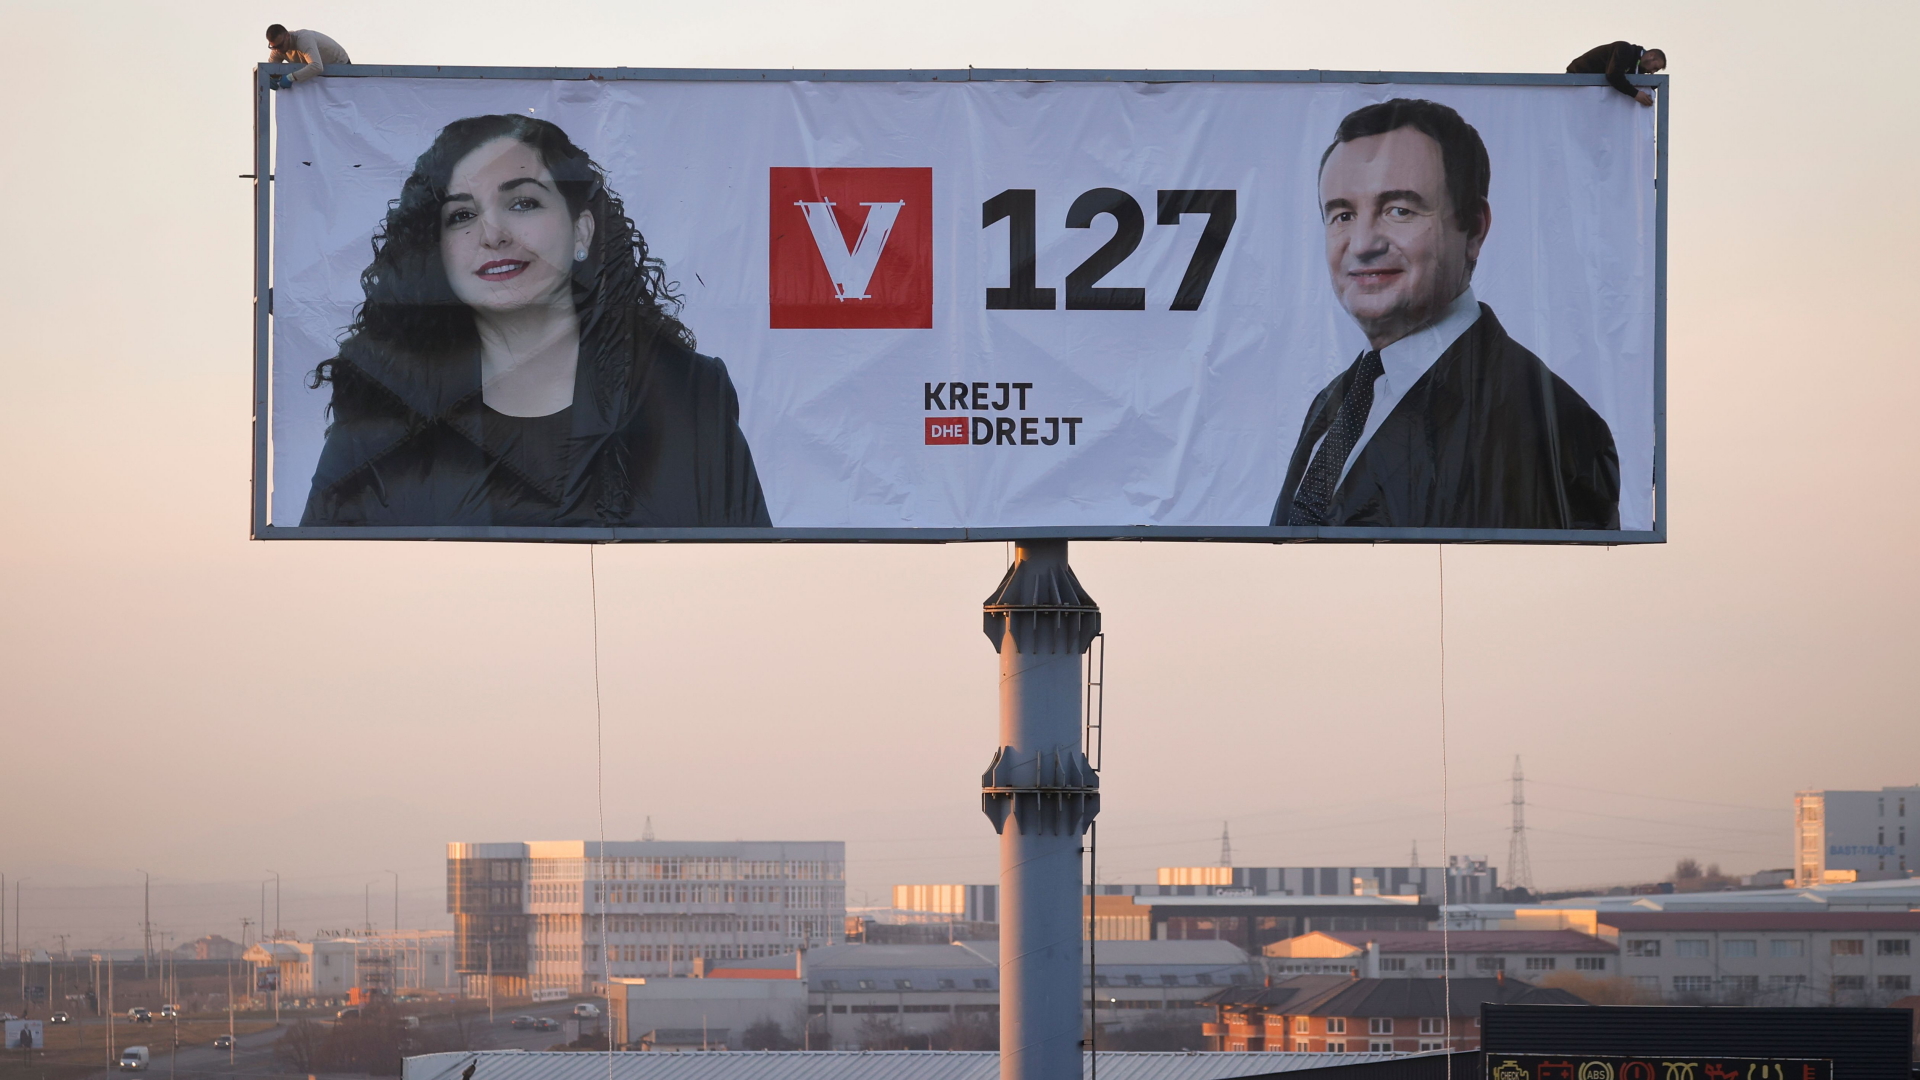 Der kosovarische Politiker Albin Kurti (r) und die Interimspräsidentin des Landes, Osmani posieren zusammen auf einem Plakat in Pristina. | VALDRIN XHEMAJ/EPA-EFE/Shutterst